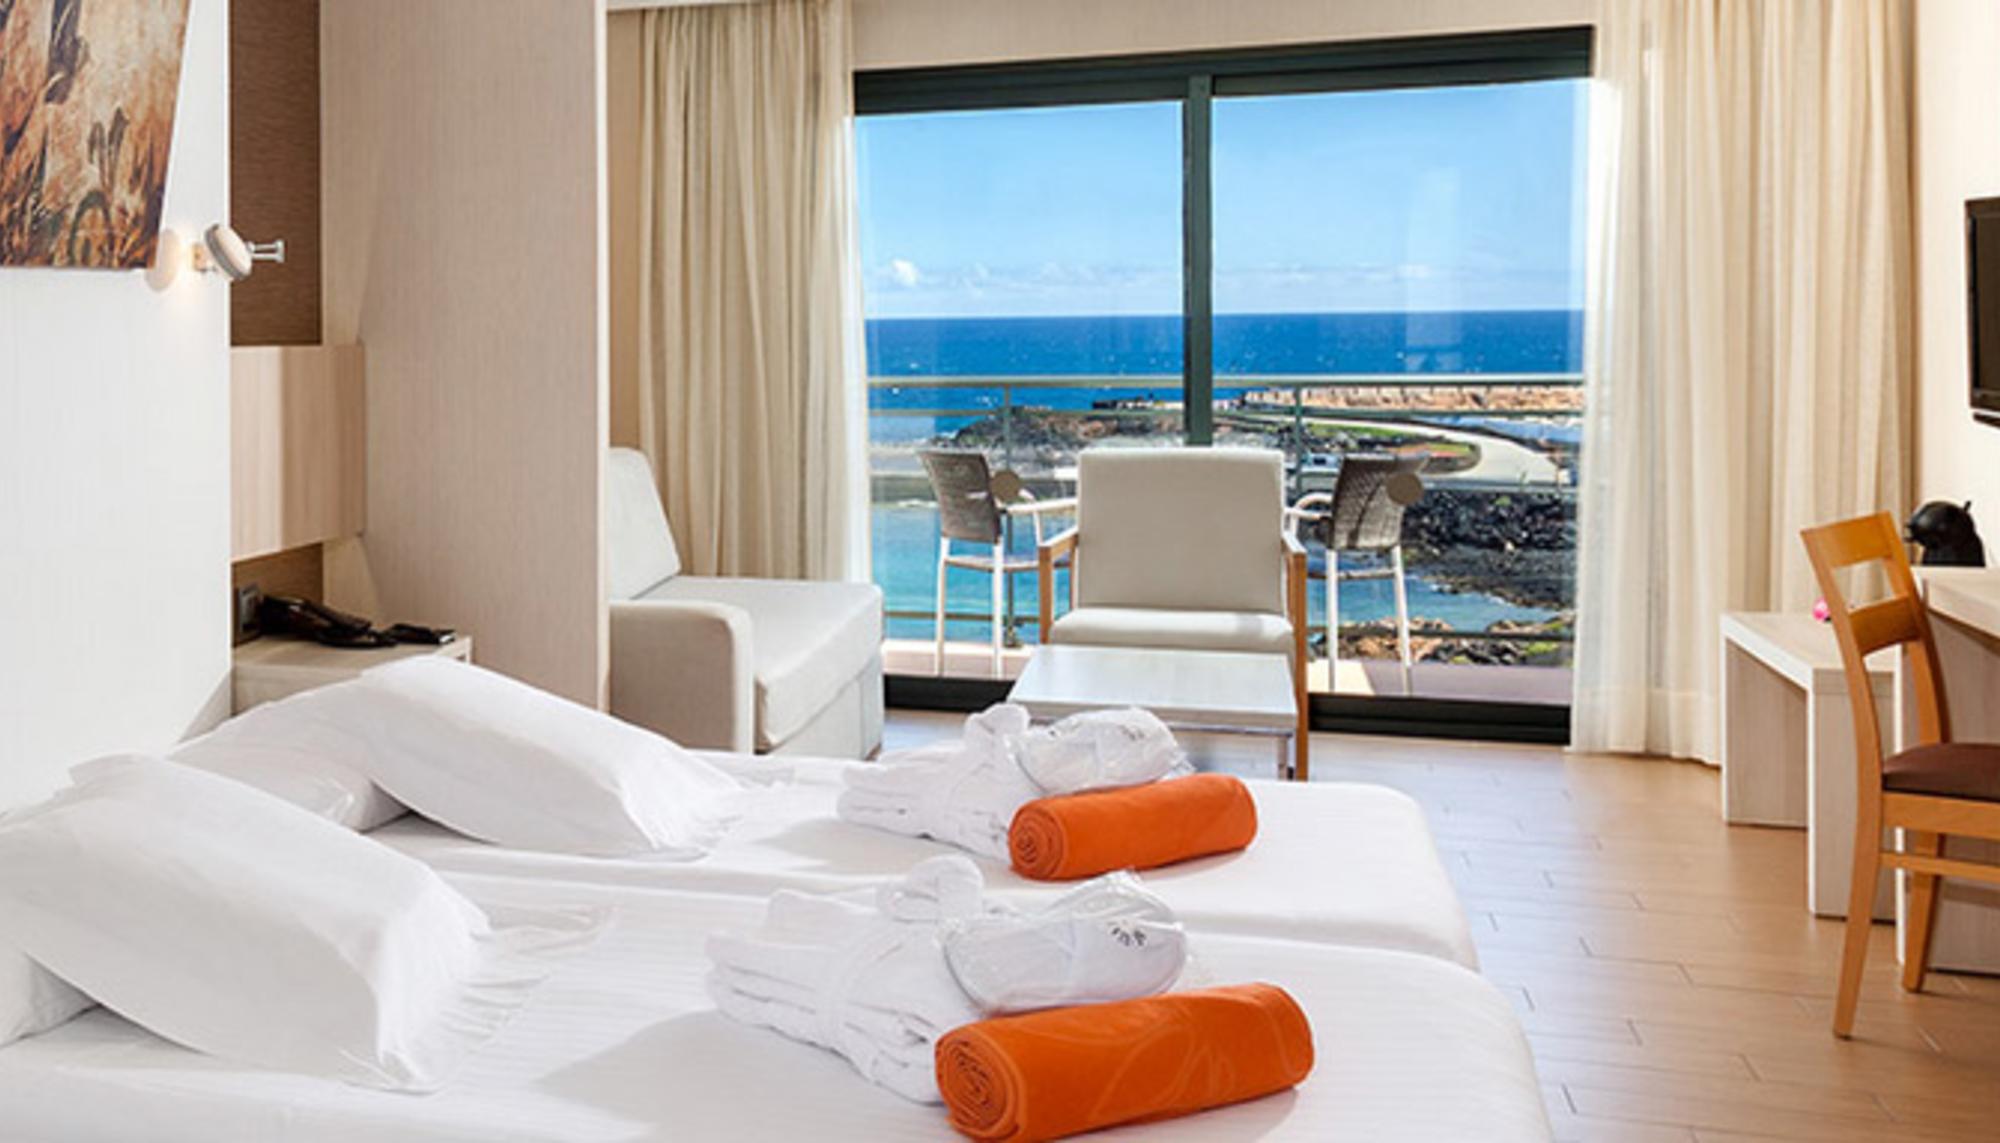 Detalle de una habitación del hotel Be Live en Lanzarote